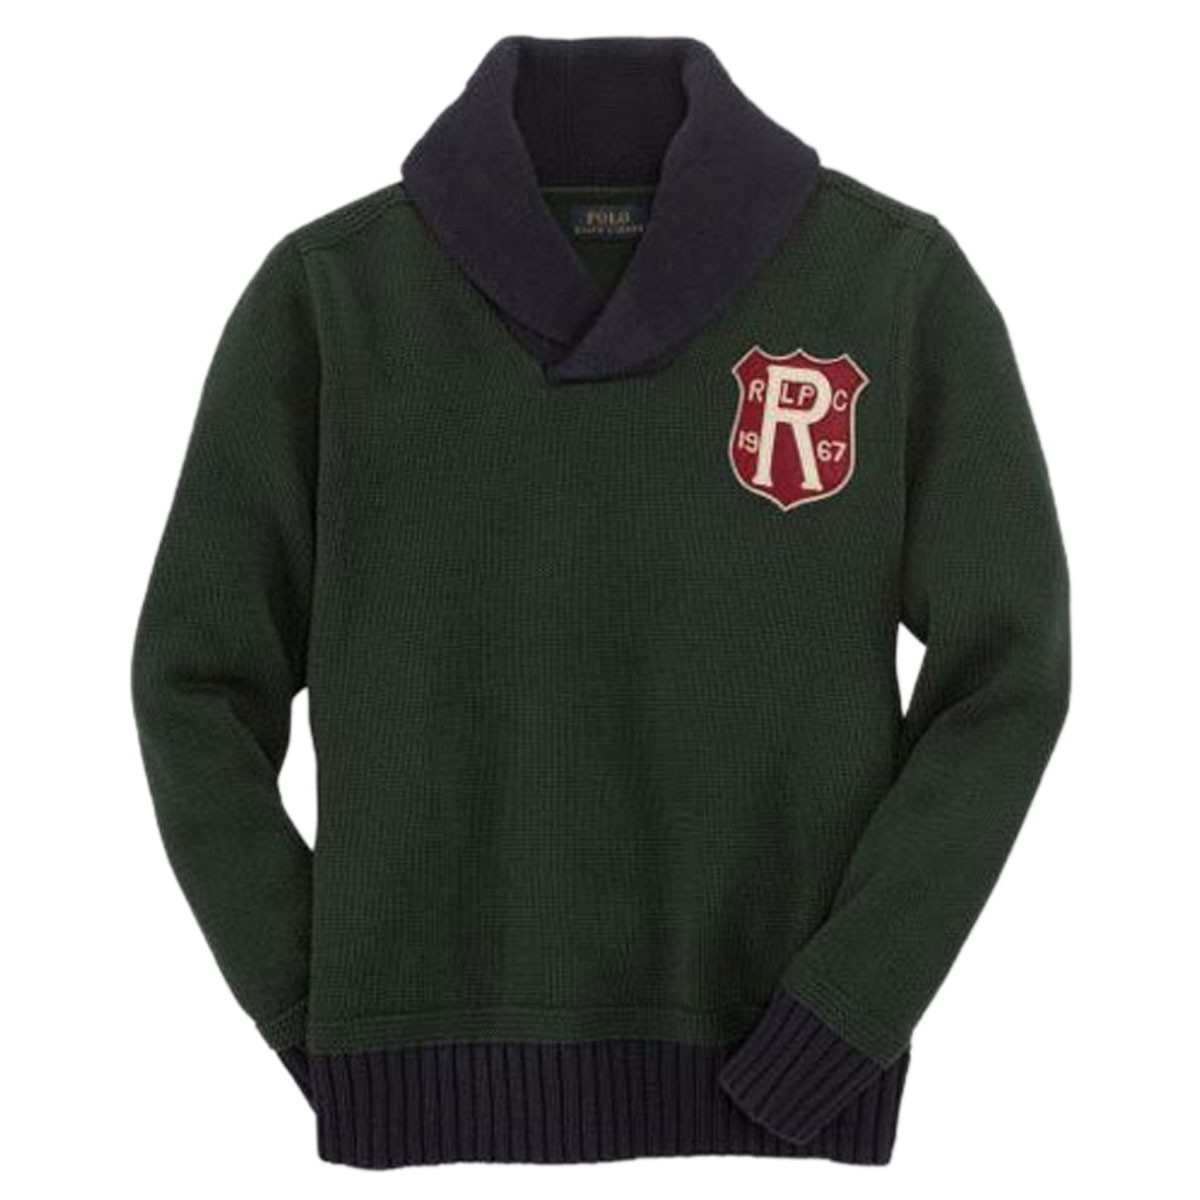 ポロラルフローレンキッズ POLO RALPH LAUREN CHILDREN 正規品 子供服 ボーイズ セーター Cotton Pullover Shawl Sweater 43535356